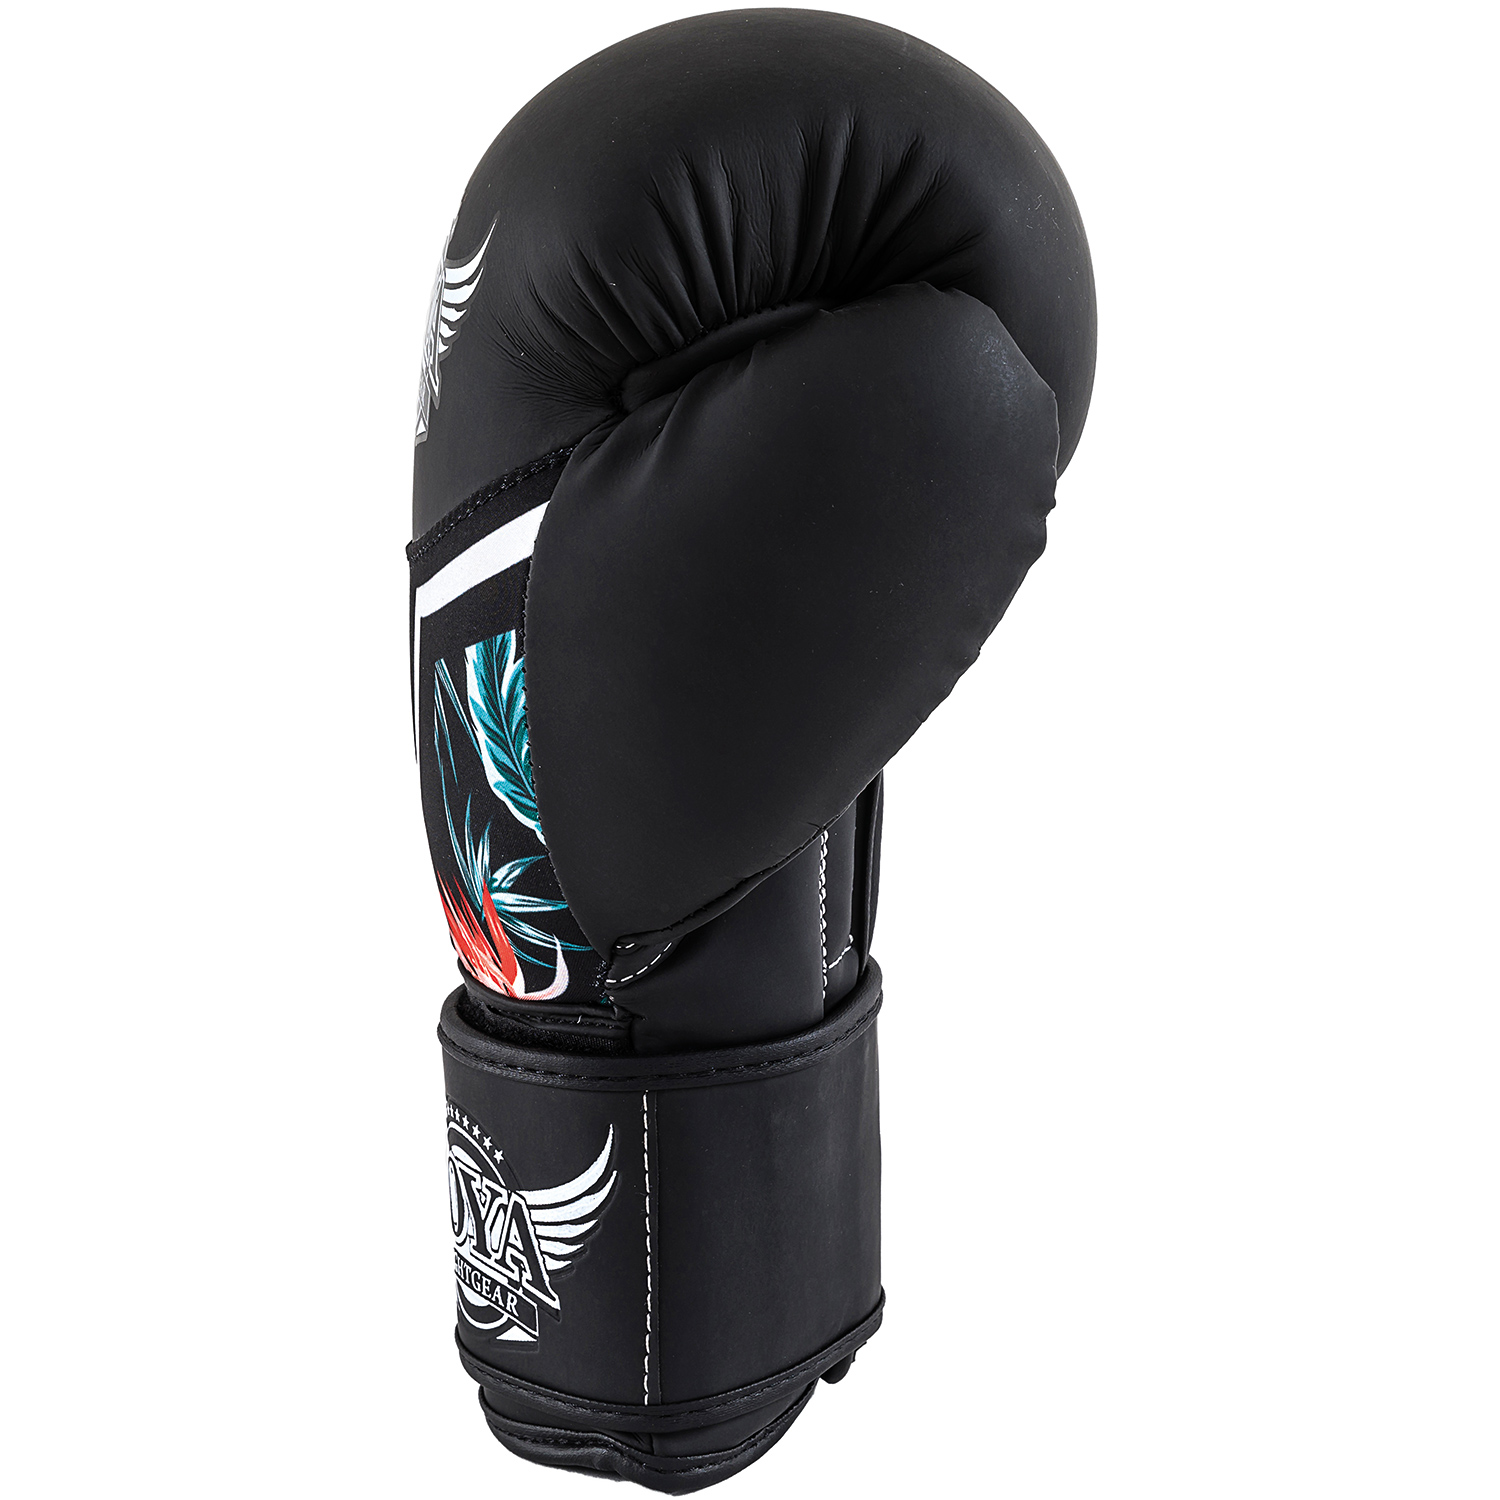 Joya Tropical boxing glove 10 oz